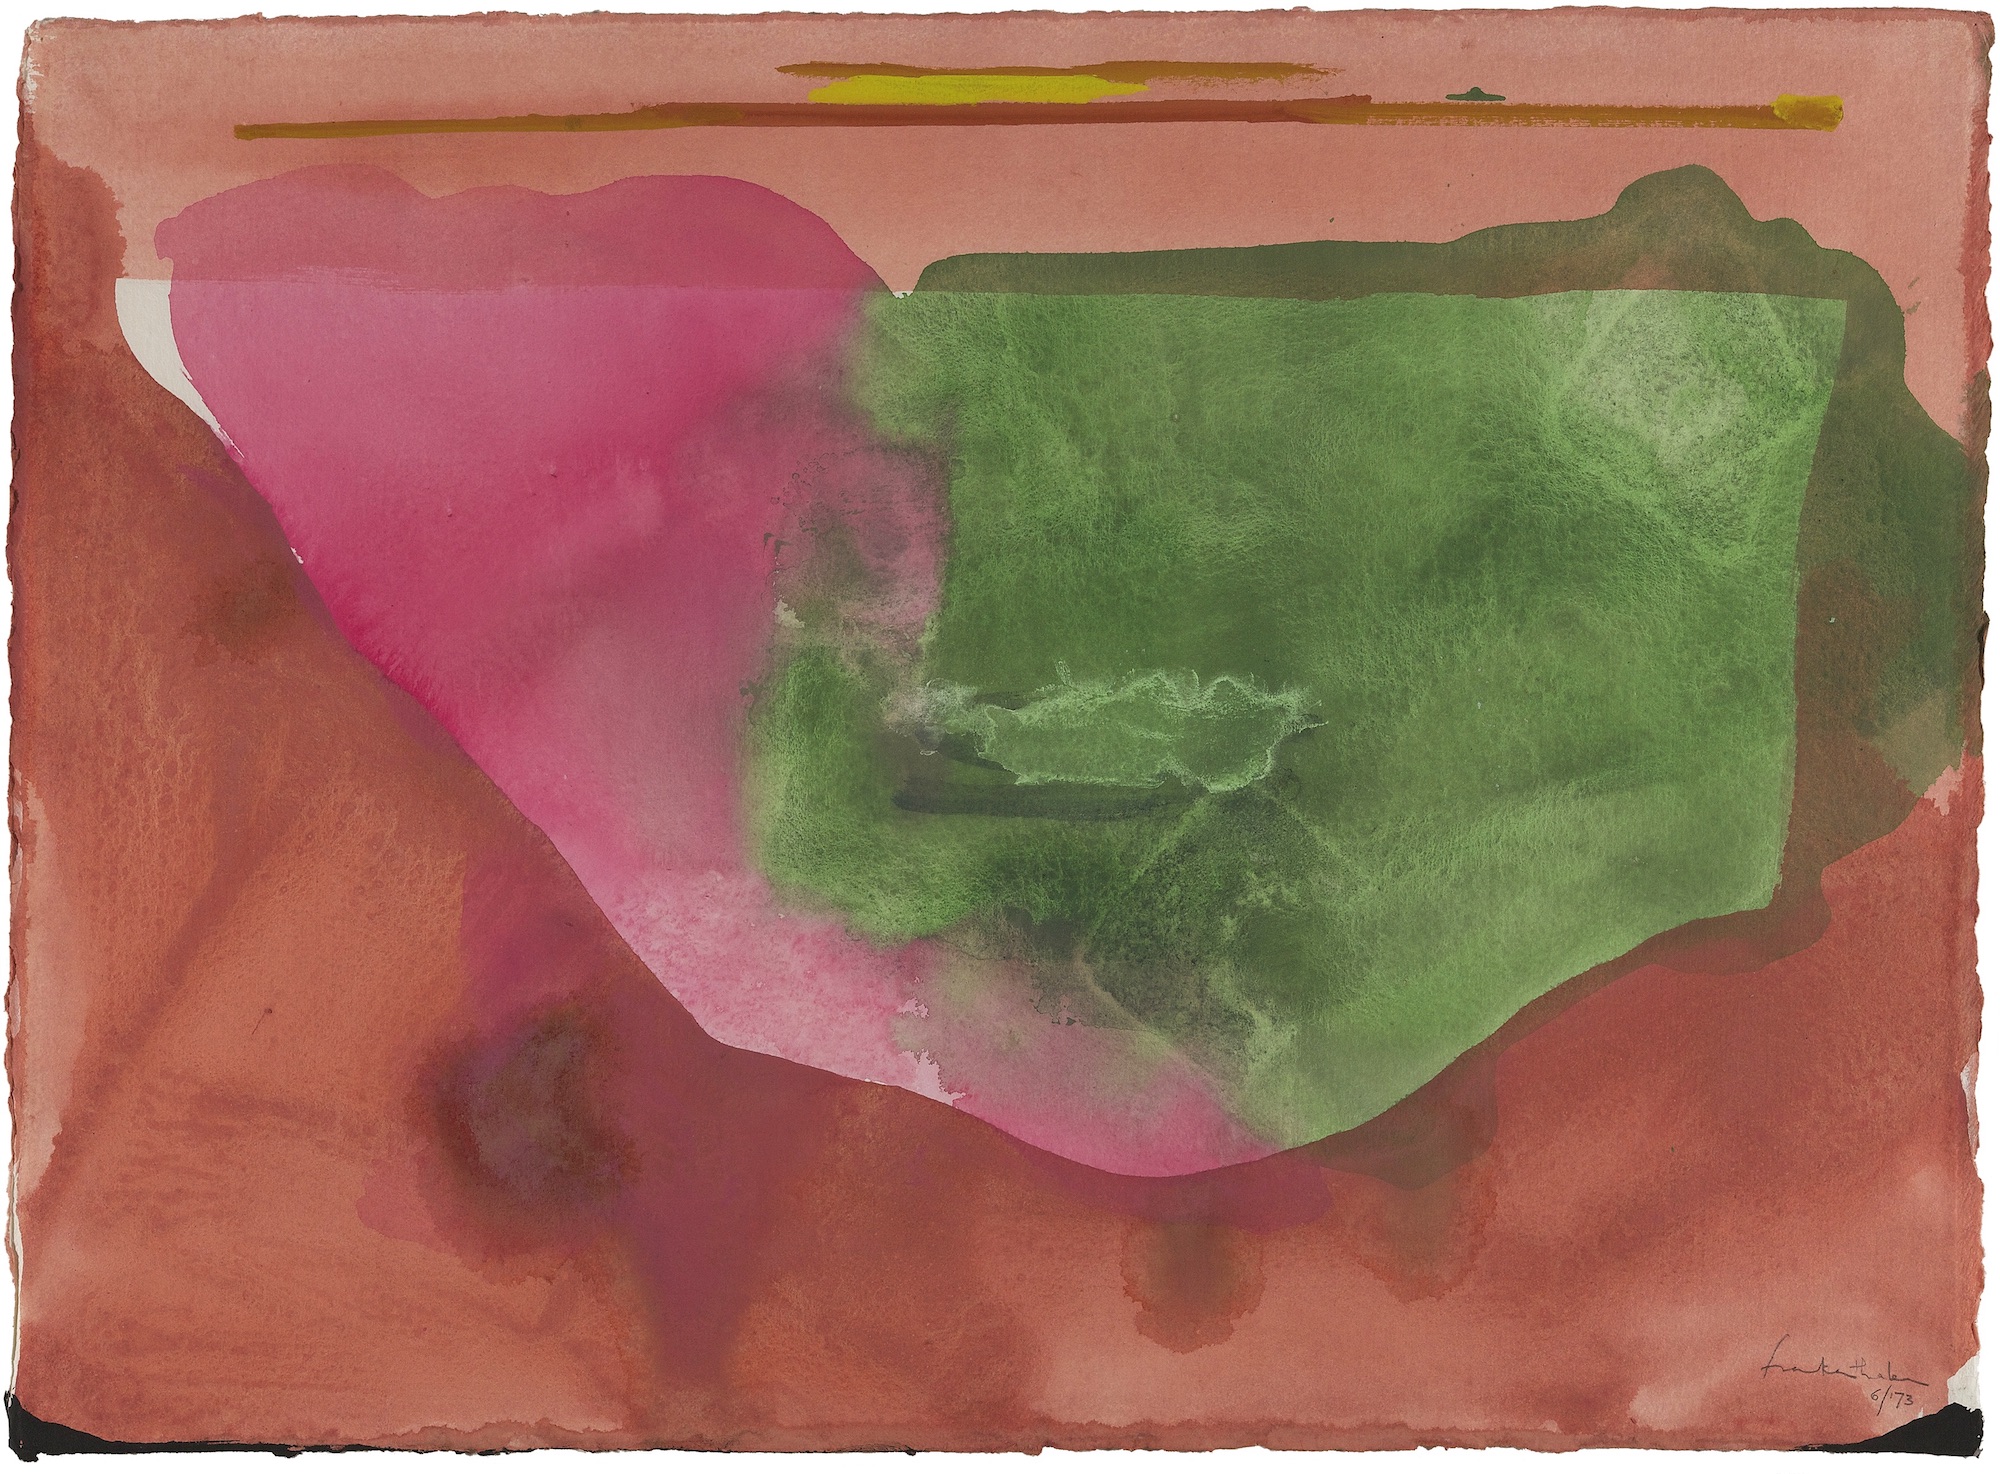 PA | Helen Frankenthaler on Paper